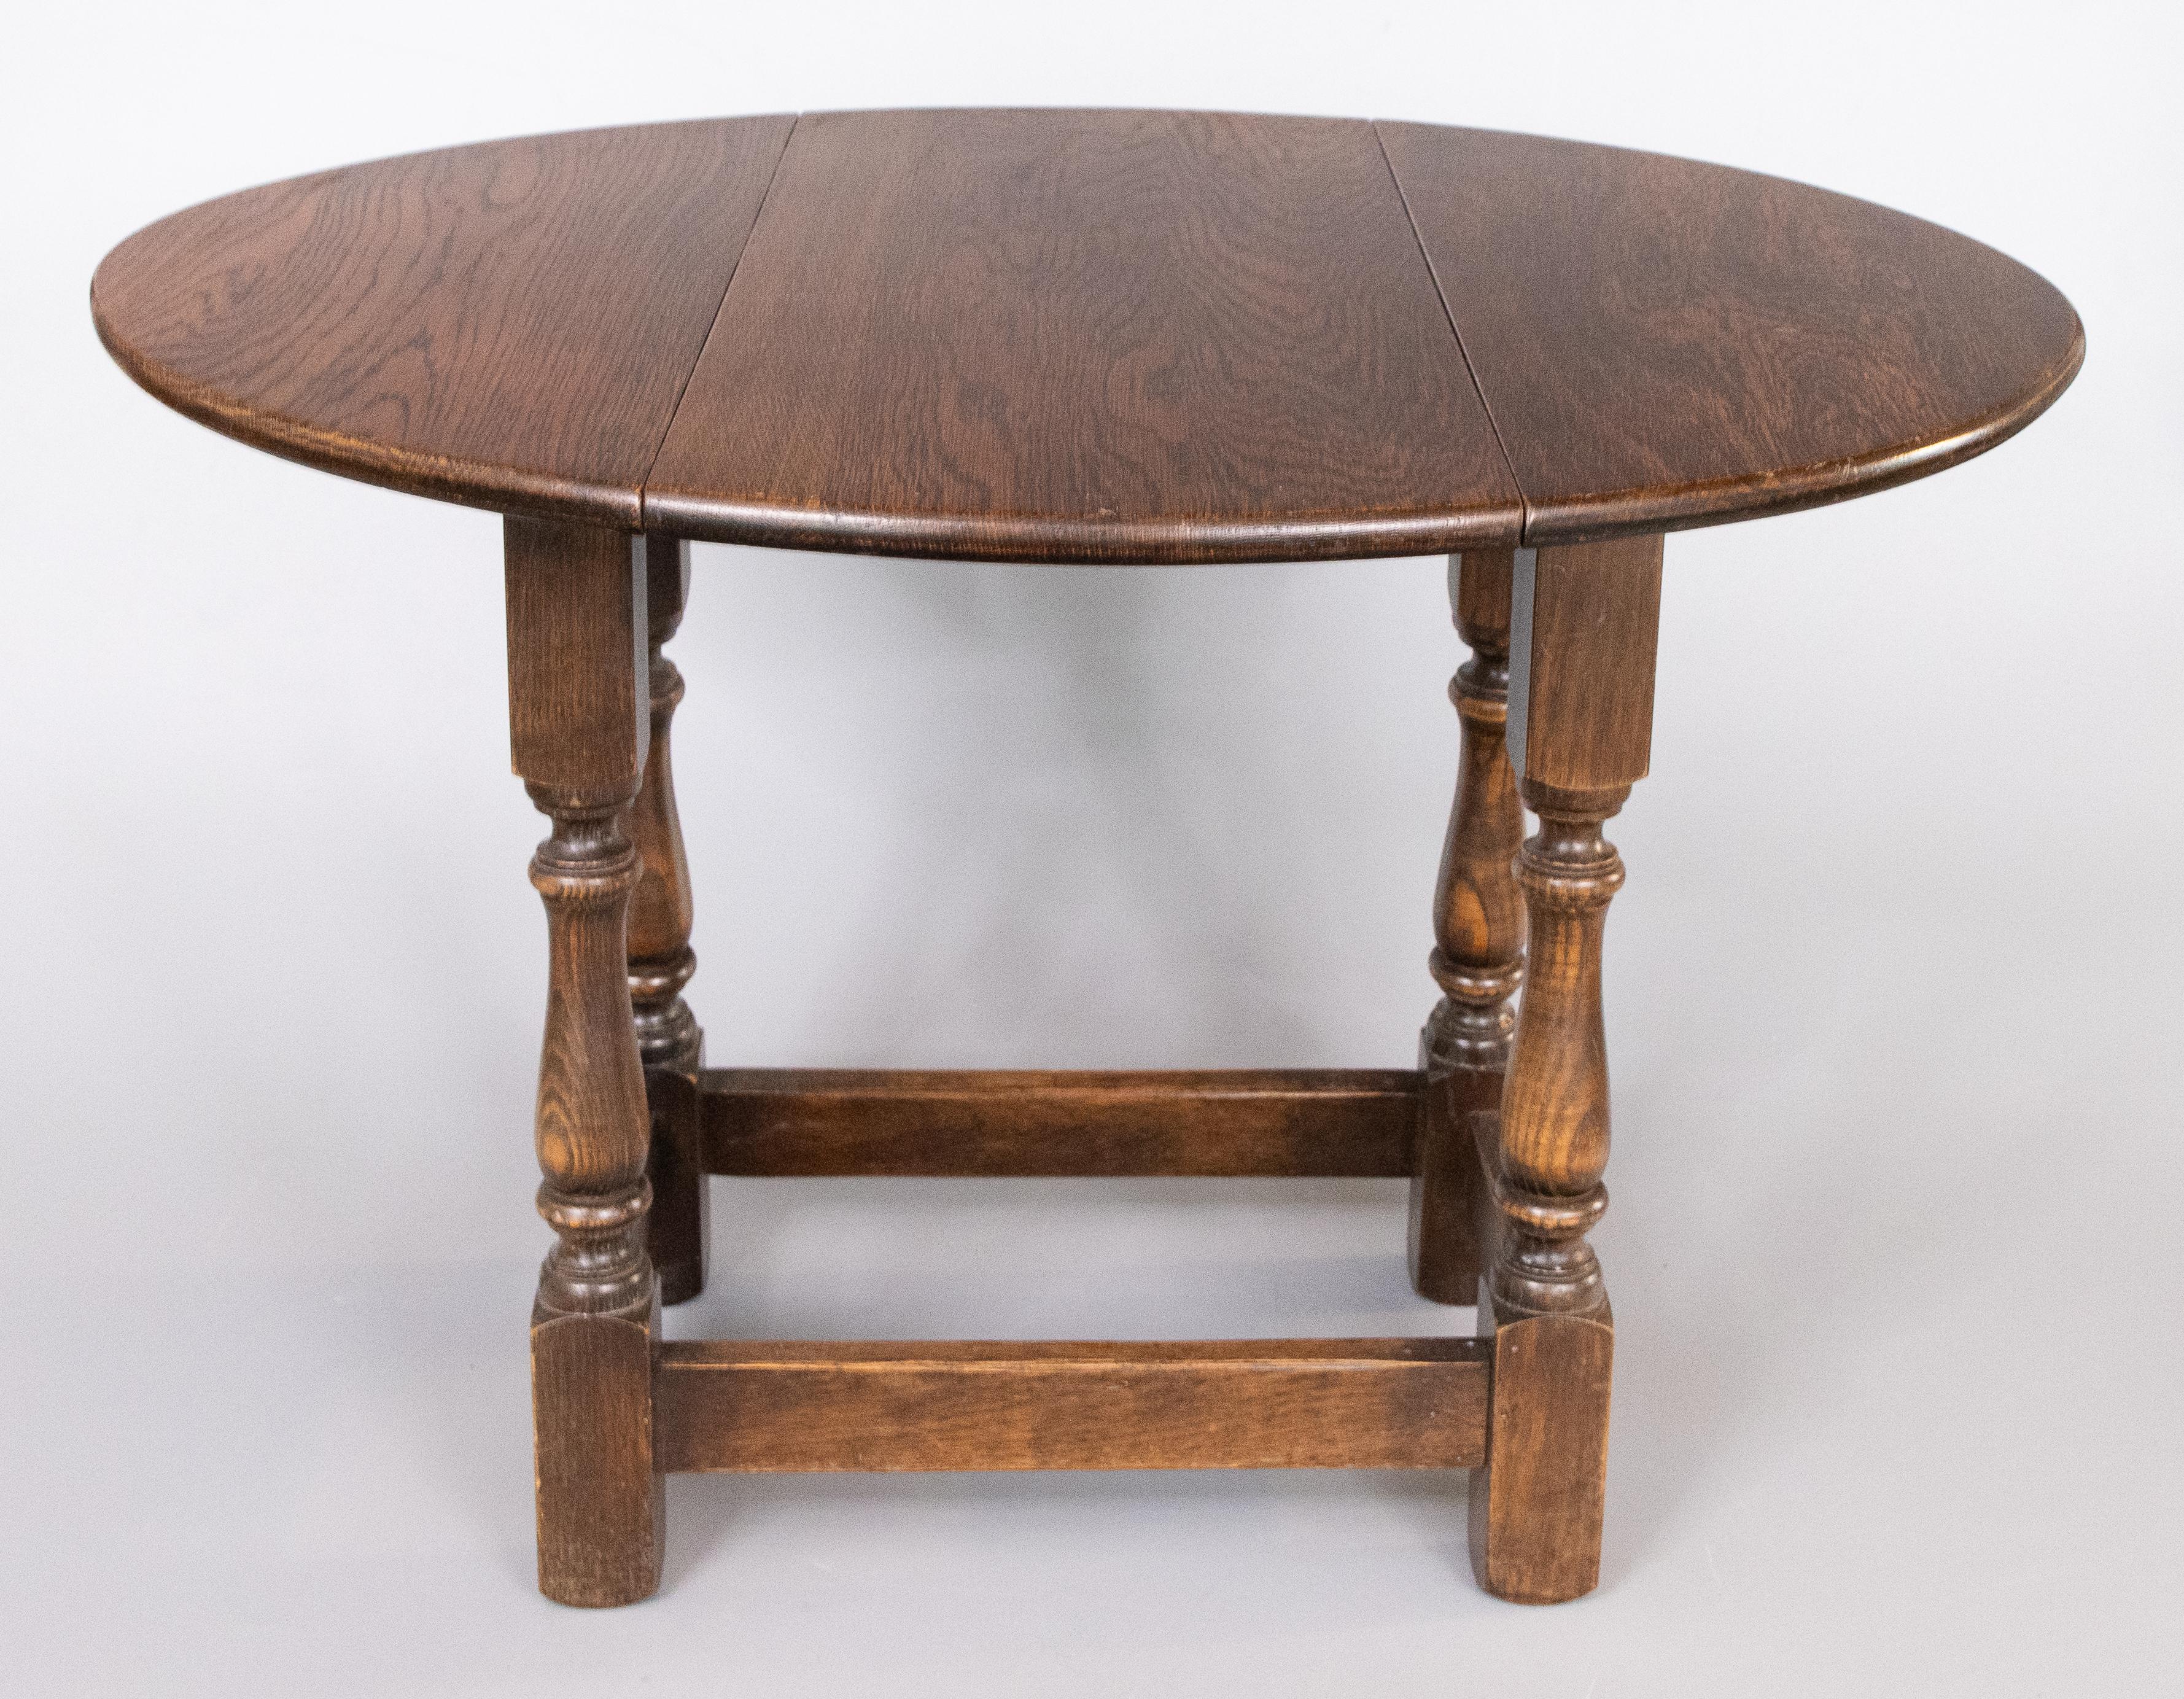 Niedriger Tisch mit drehbarer Platte und klappbaren Blättern auf gedrechselten Beinen, die durch Bahren verbunden sind. Breite des Tischbandes 9,5